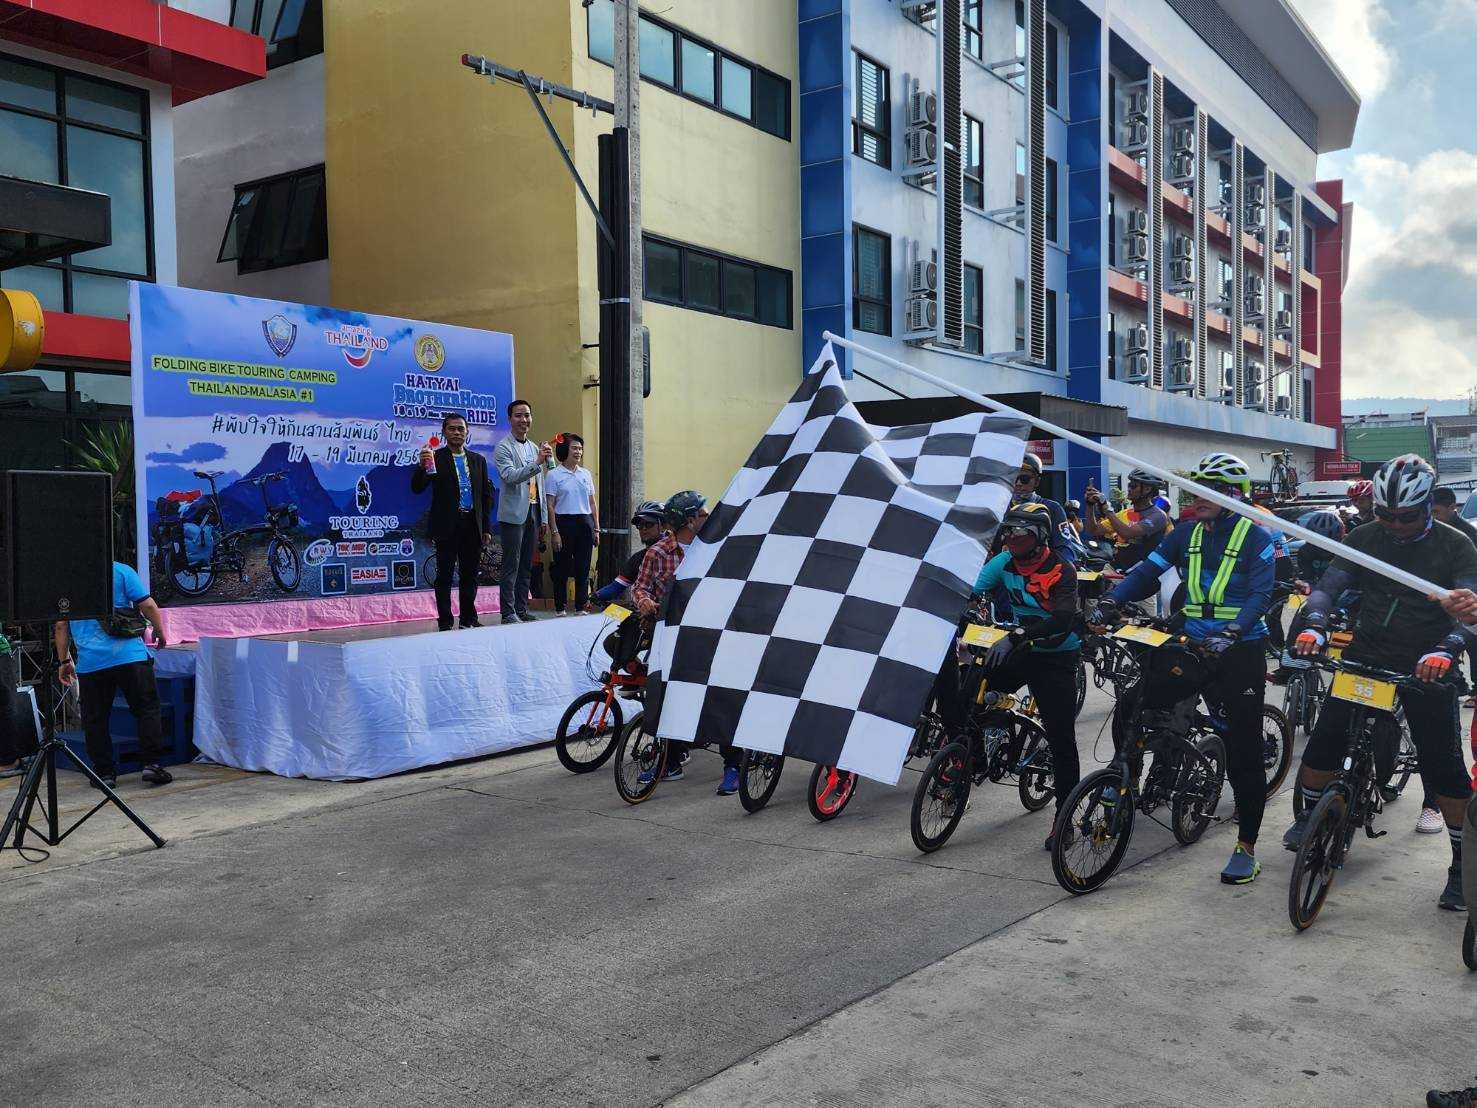 หอการค้าจังหวัดสงขลา ร่วมเป็นเกียรติในงาน Folding Bike Touring Camping Thailand-Malaysia “พับใจให้กัน สานสัมพันธ์ ไทย-มาเลเซีย ต้อนรับนักปั่นจักรยานล้อเล็กและส่งขบวนนักปั่นเดินทางกลับ”